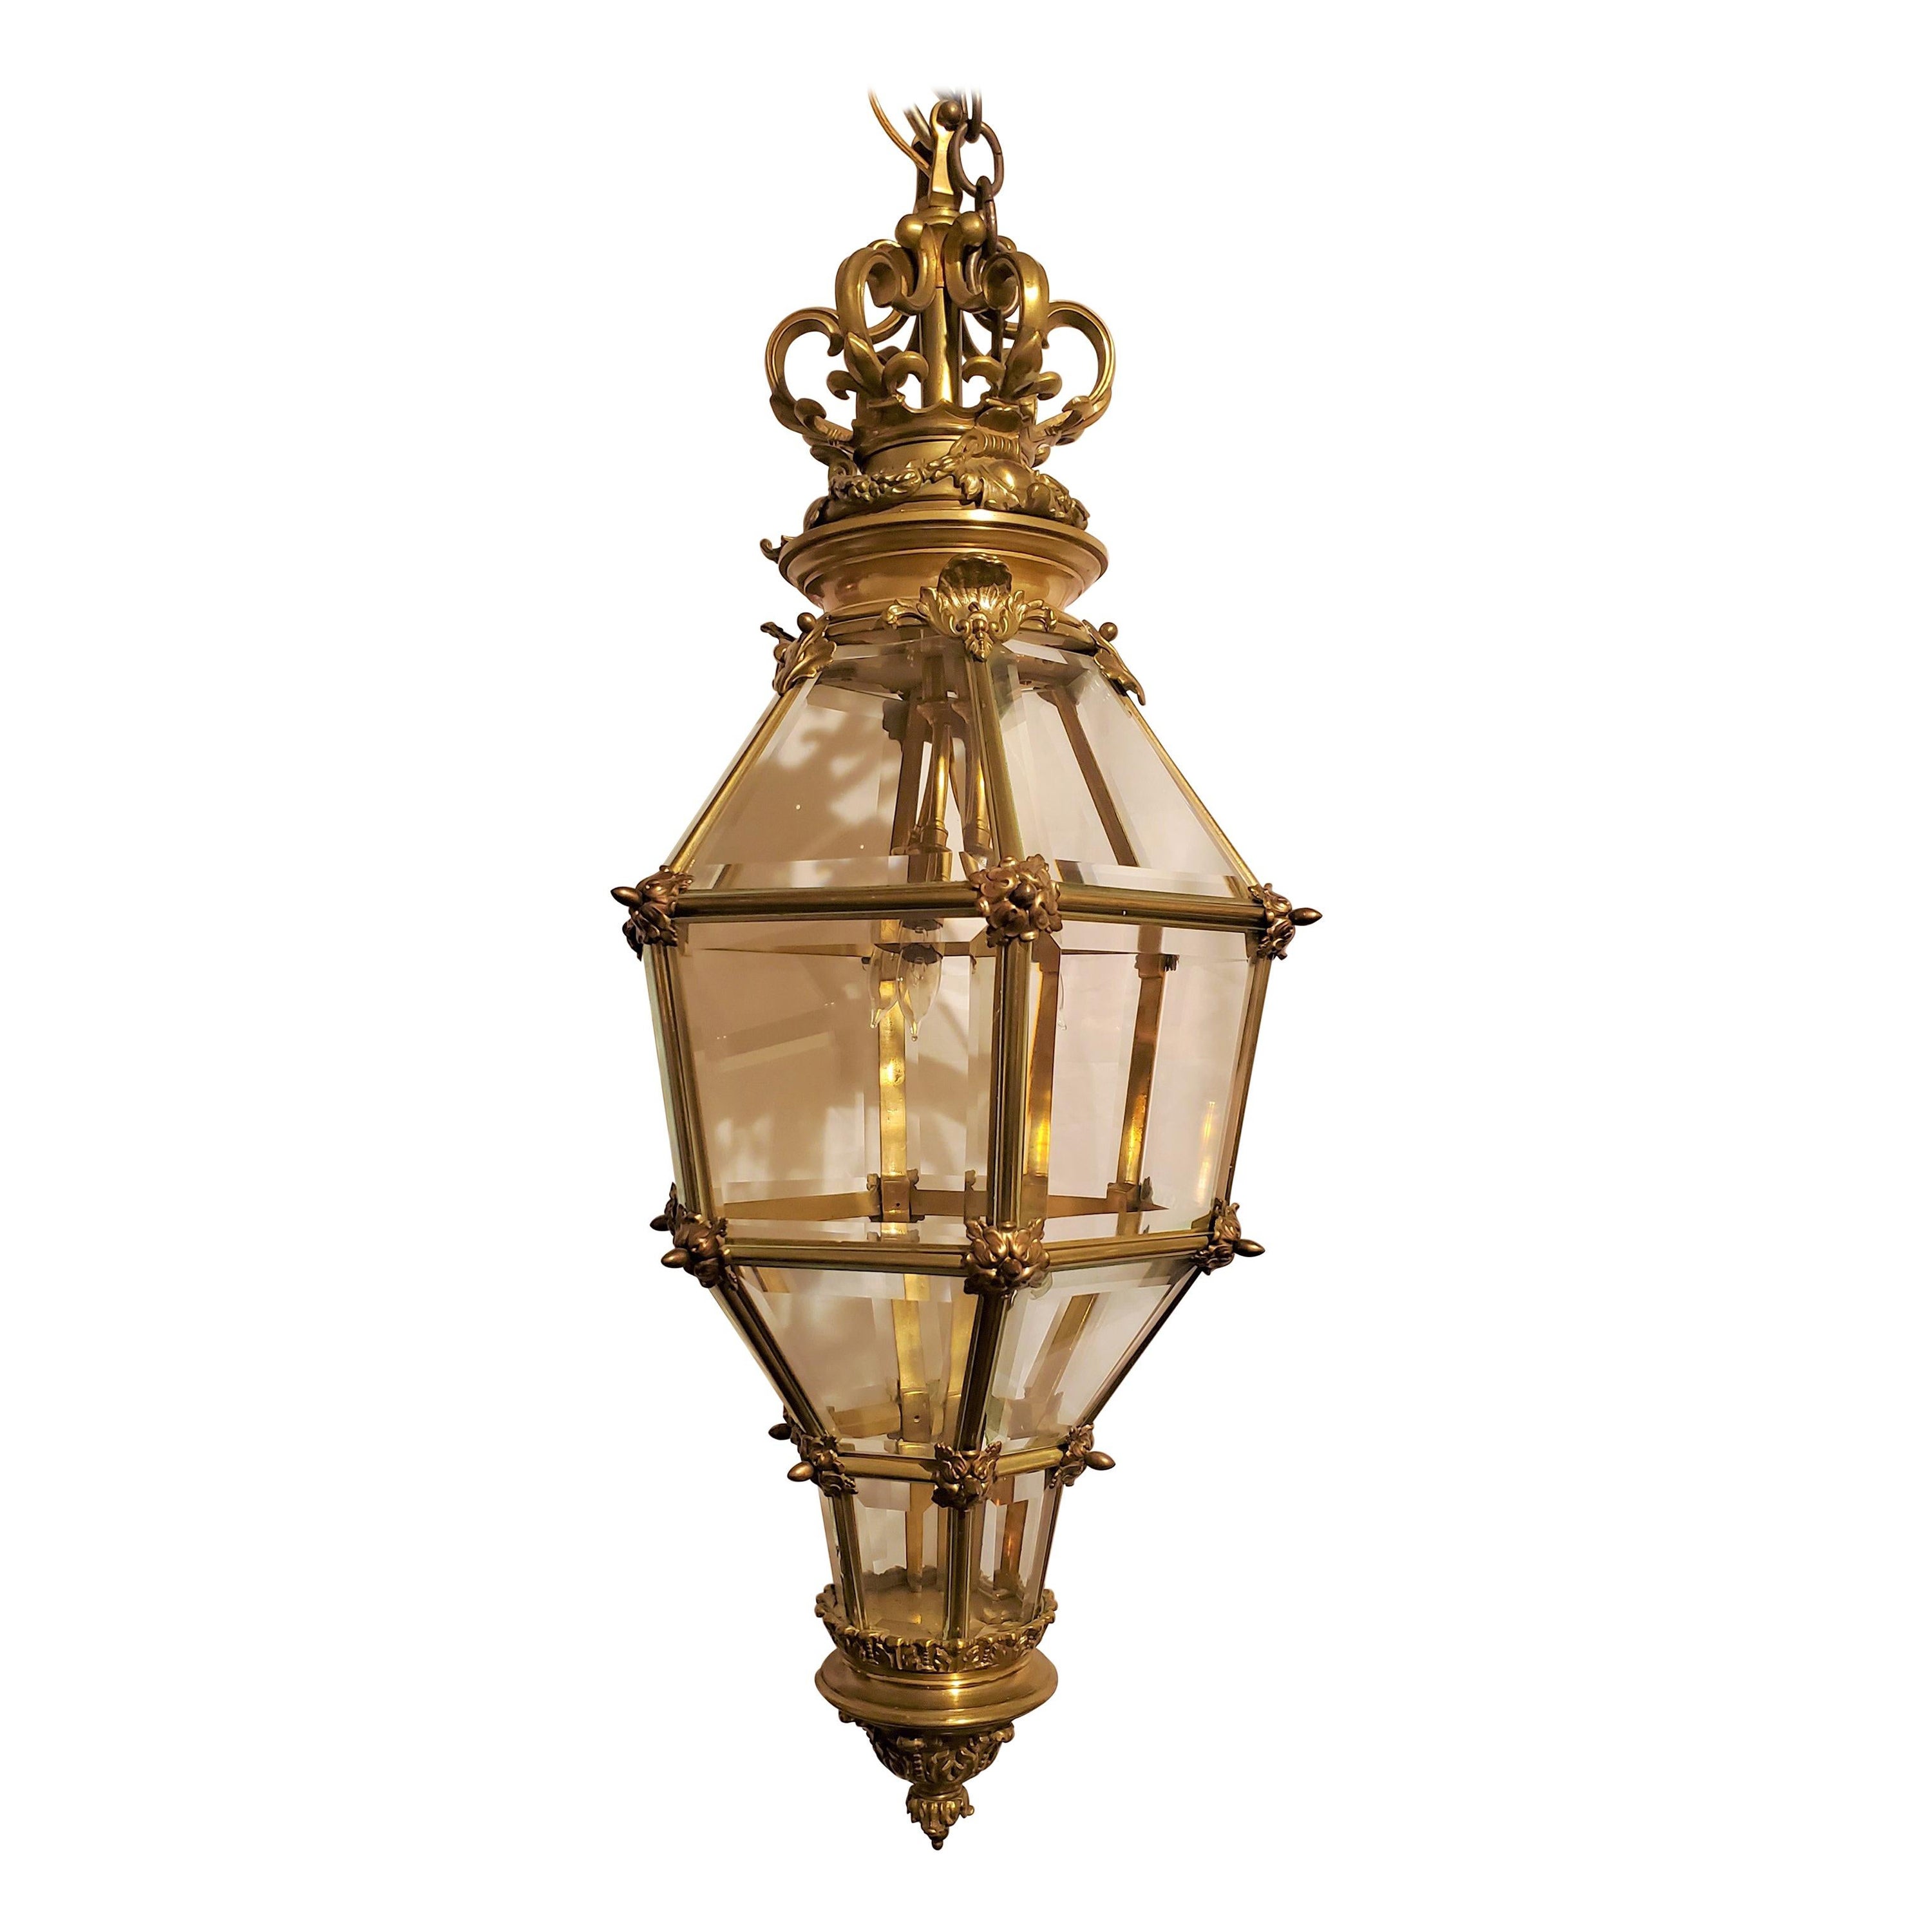 Ancienne lanterne française à 3 lumières en bronze et verre biseauté, vers 1890